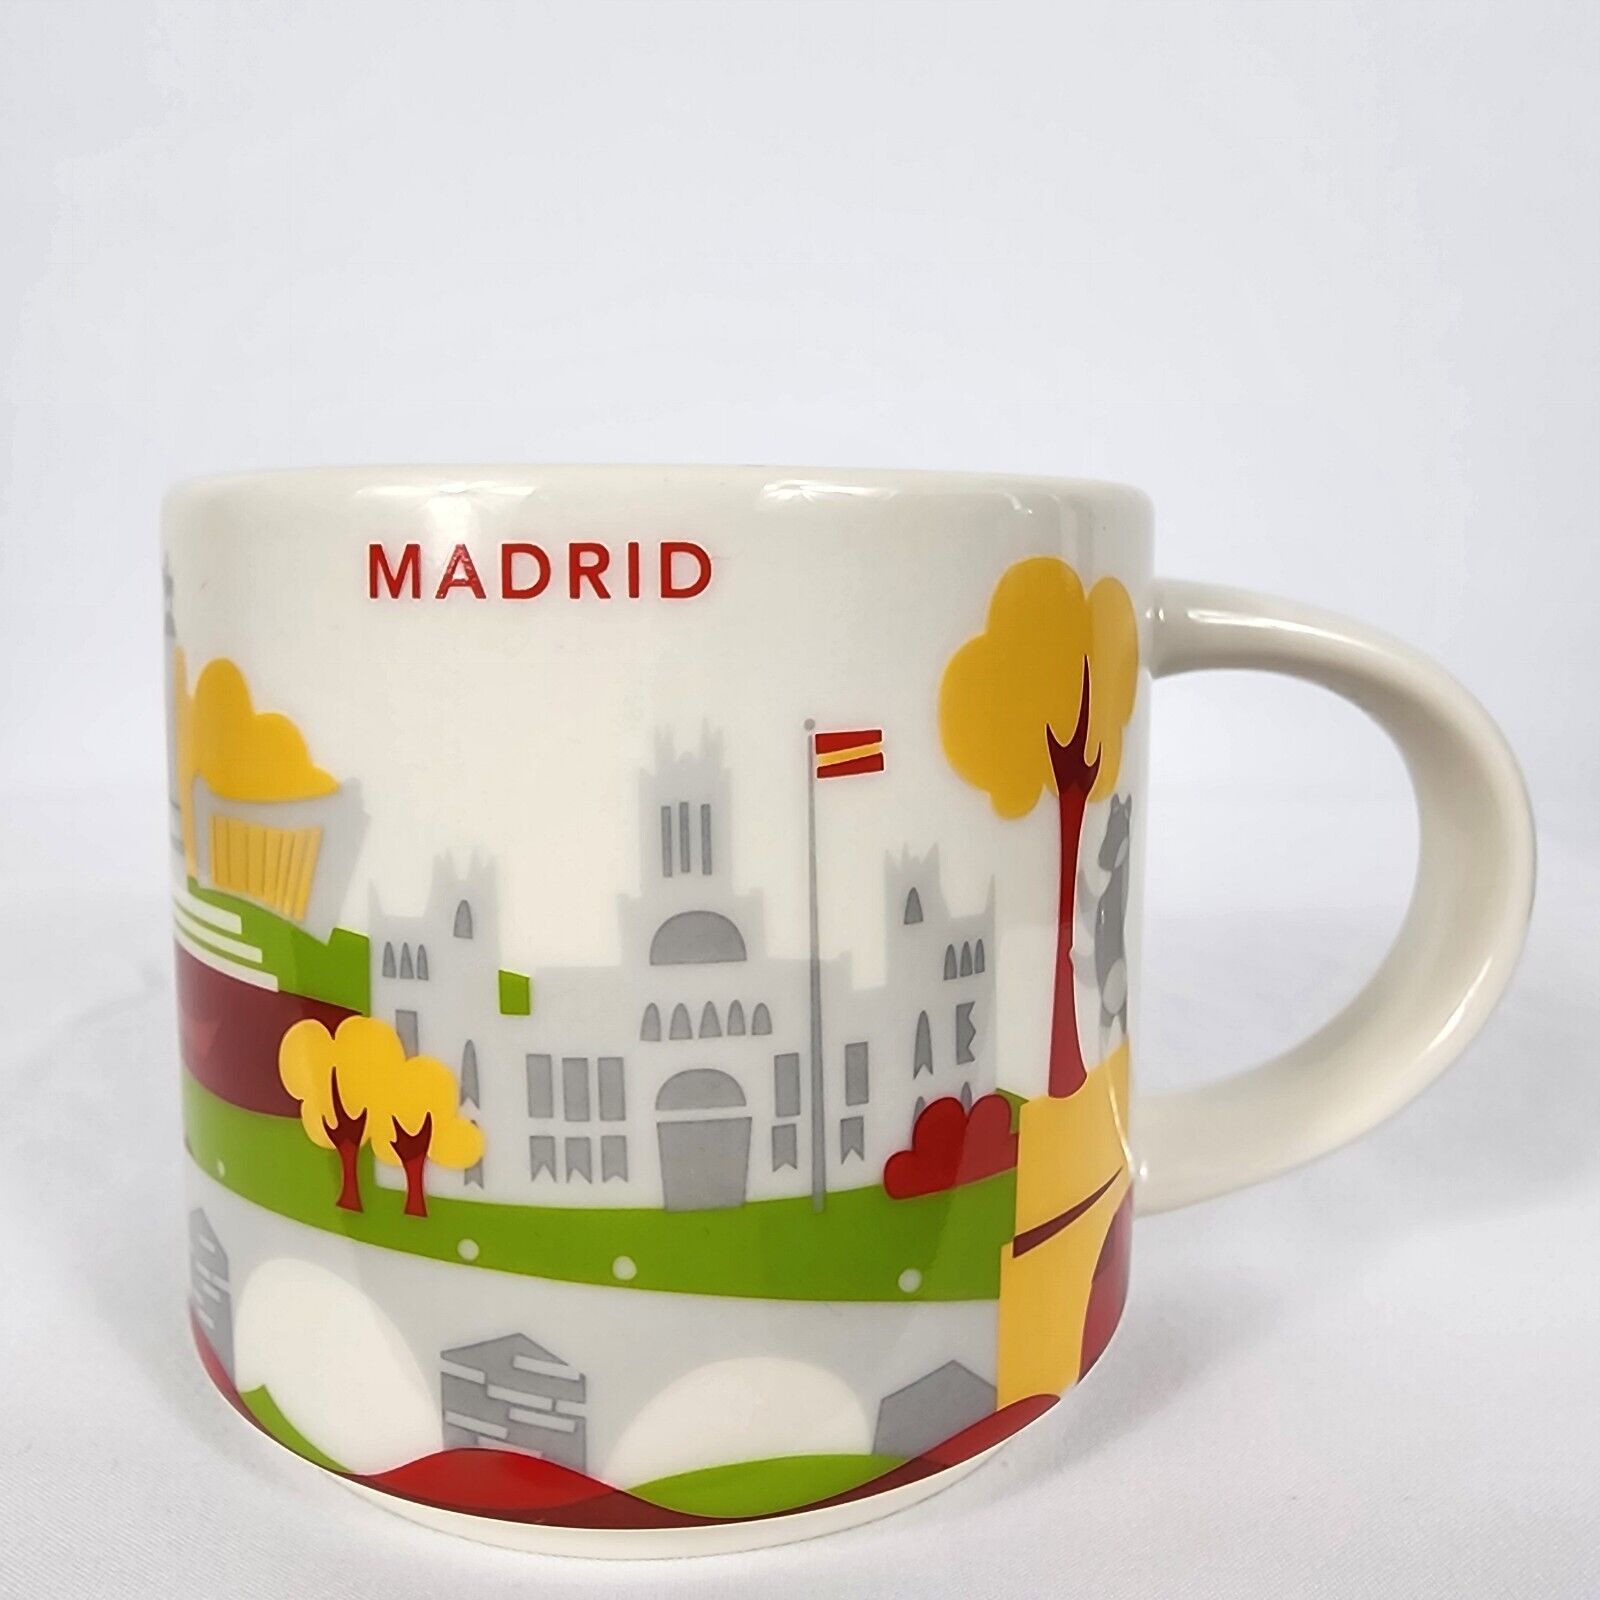 STARBUCKS COFFEE MUG - MADRID, SPAIN Been There Mug, 2016 Collectible 